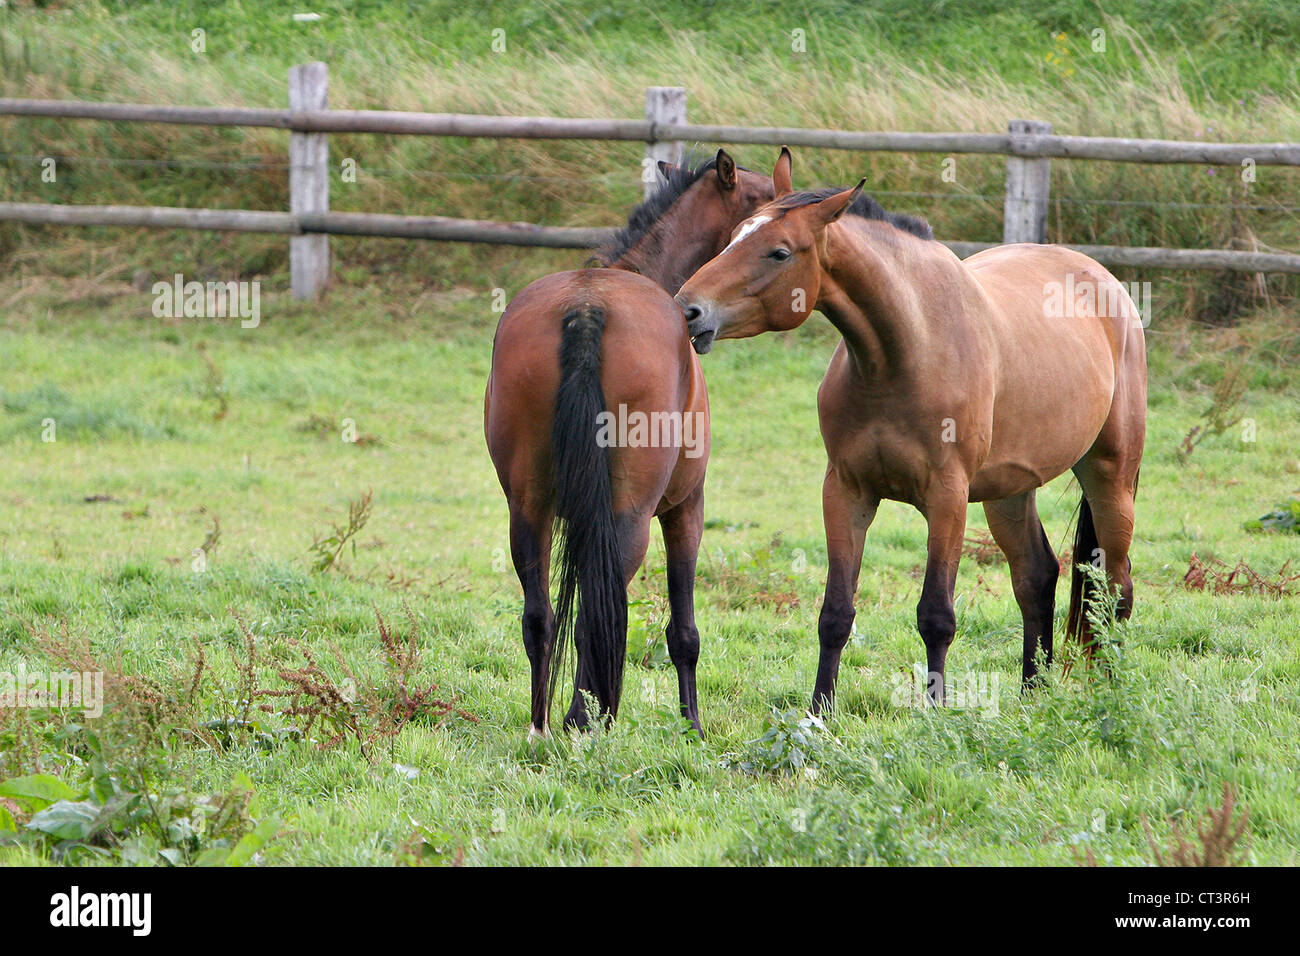 FRENCH SADDLEBRED HORSE Stock Photo